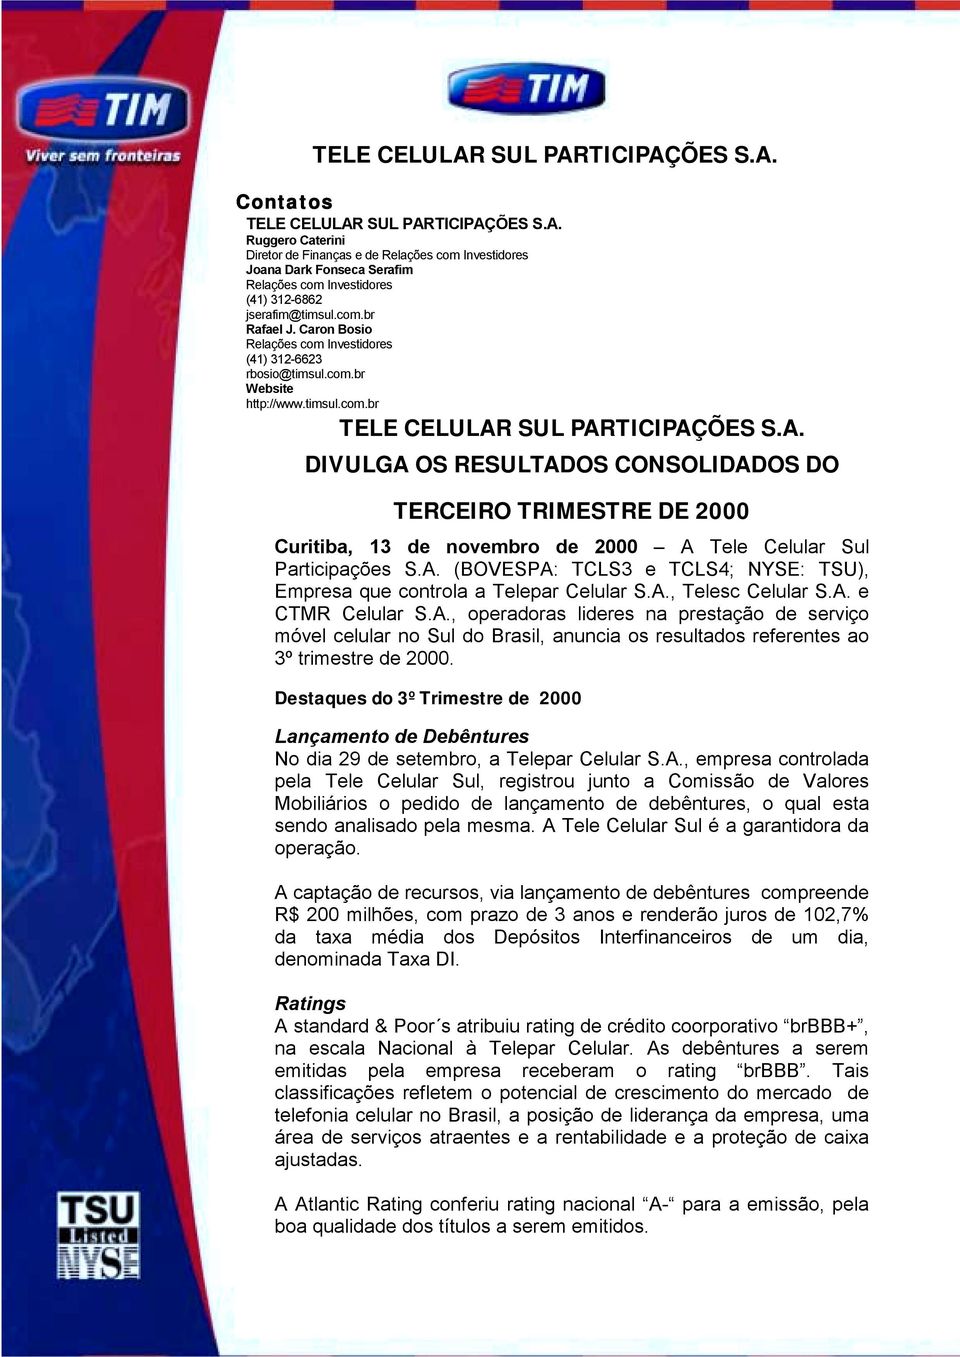 SUL PARTICIPAÇÕES S.A. DIVULGA OS RESULTADOS CONSOLIDADOS DO TERCEIRO TRIMESTRE DE 2000 Curitiba, 13 de novembro de 2000 A Tele Celular Sul Participações S.A. (BOVESPA: TCLS3 e TCLS4; NYSE: TSU), Empresa que controla a Telepar Celular S.